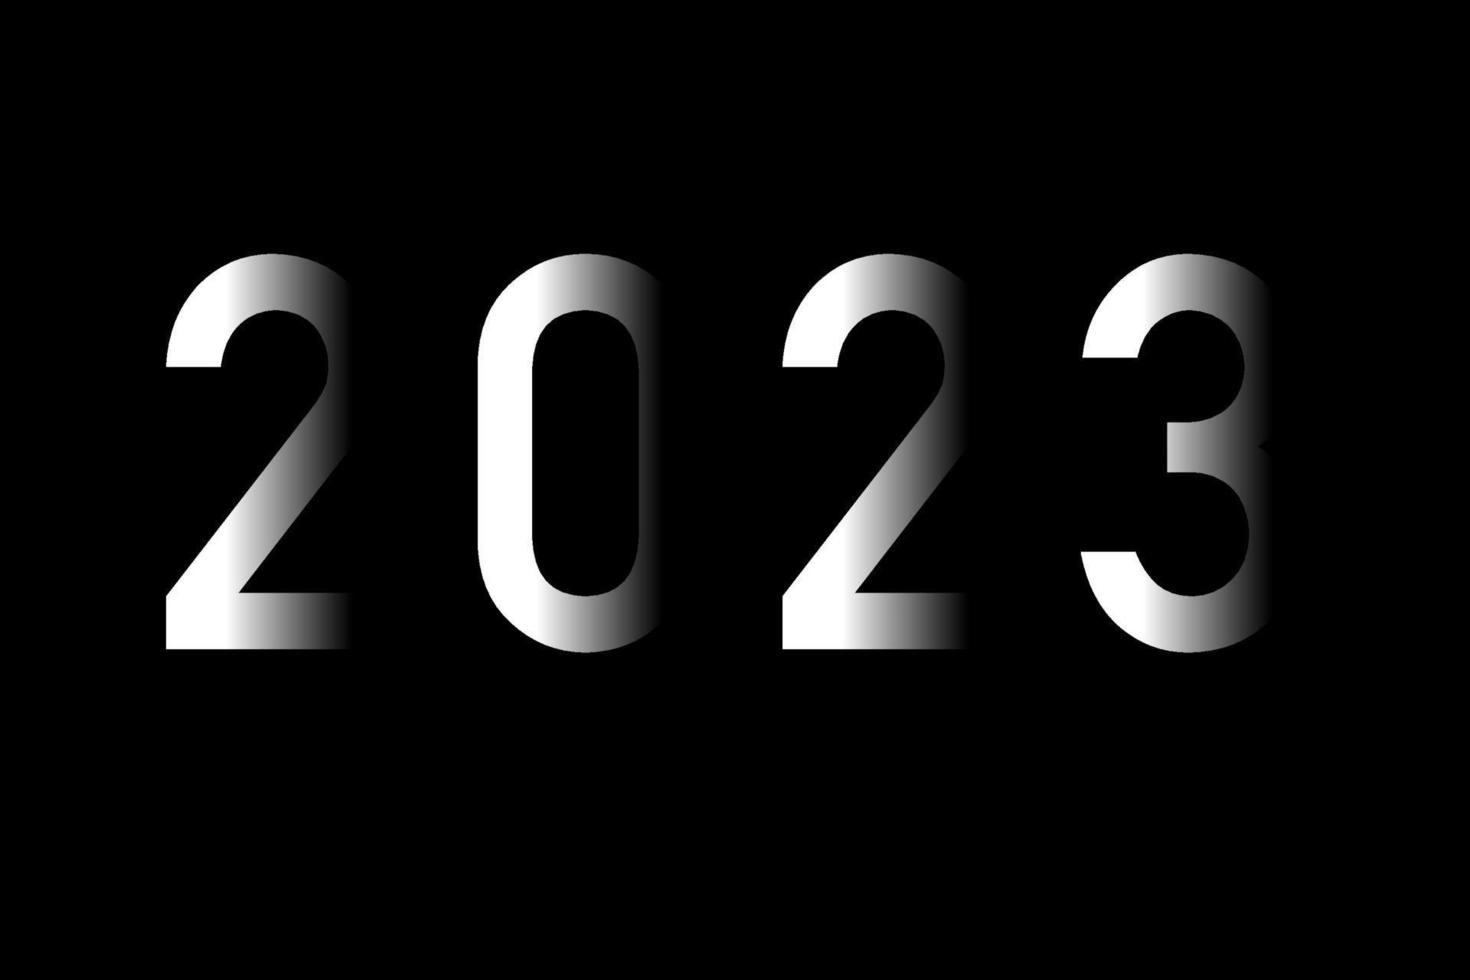 2023 chiffres, numéro sur fond noir. des parties de chiffres se cachent sur fond sombre. effet 3d. illustration vectorielle. vecteur